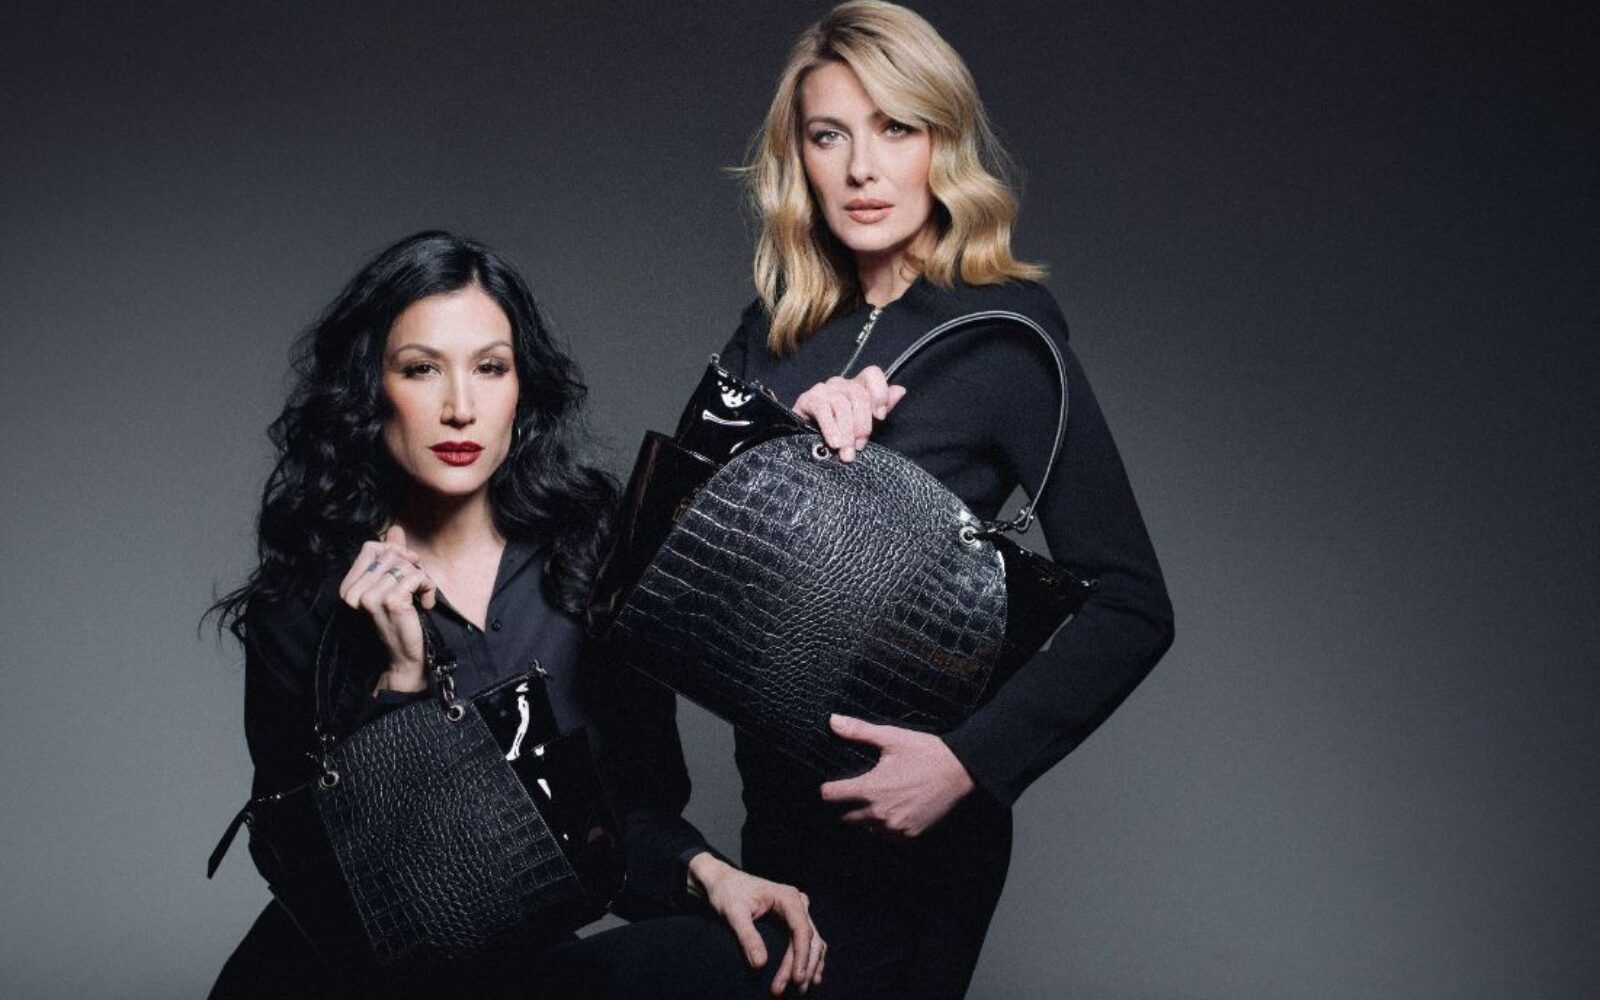 Predstavljena nova kolekcija Galko modnih torbi inspirirana jakim ženama